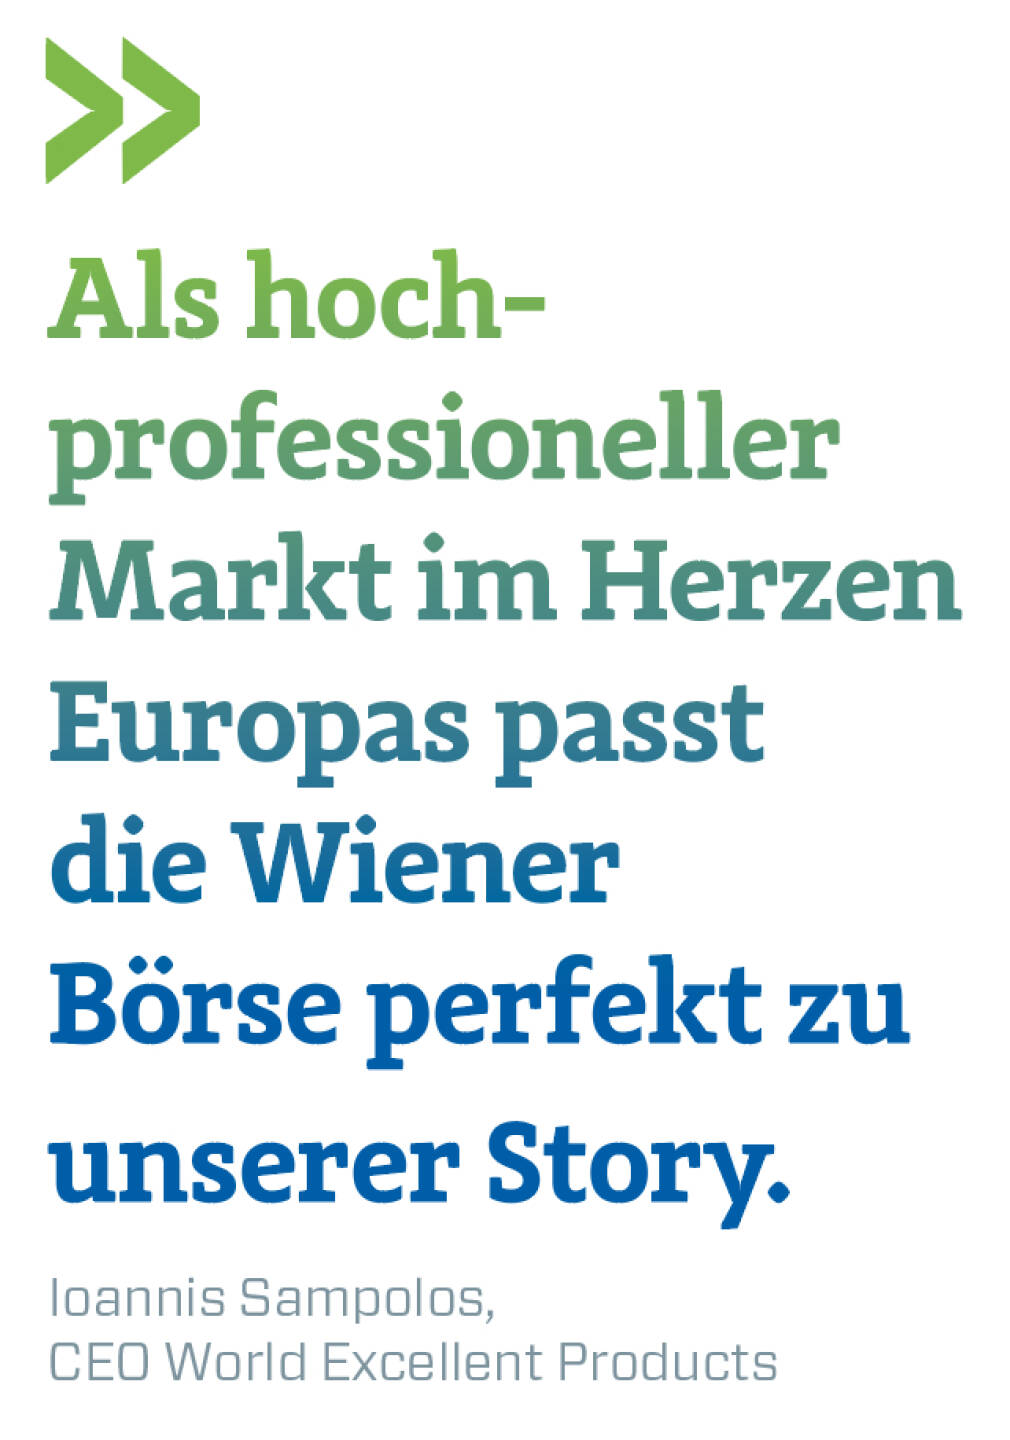 Als hoch-professioneller Markt im Herzen Europas passt die Wiener Börse perfekt zu unserer Story.
Ioannis Sampolos, CEO World Excellent Products